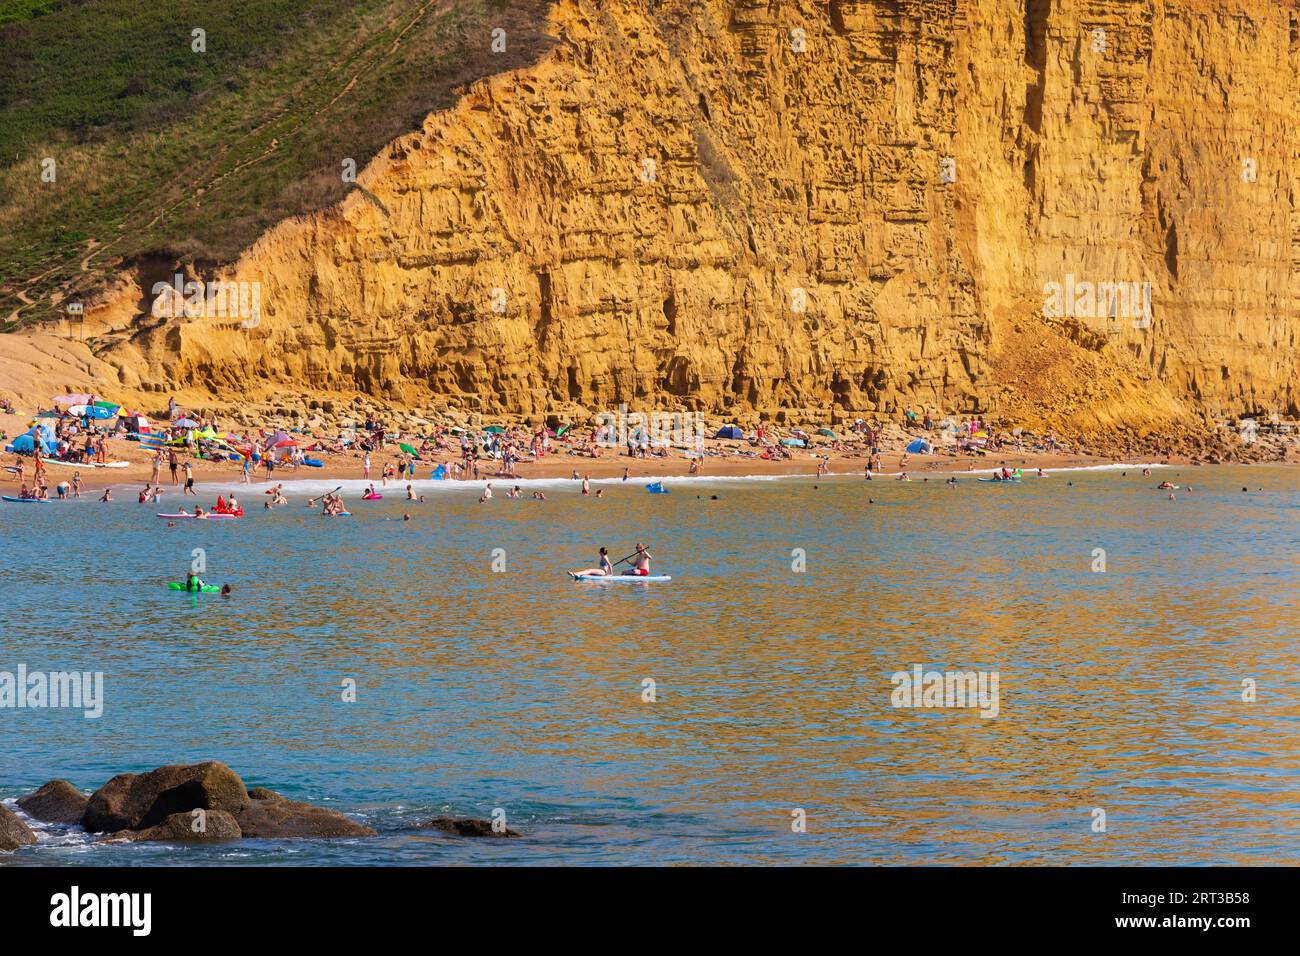 Die goldenen Klippen der West Bay mit Sonnenanbetern und Schwimmern nach dem jüngsten Felssturz. Bridport, Dorset. Der heißeste Tag des Jahres. Stockfoto